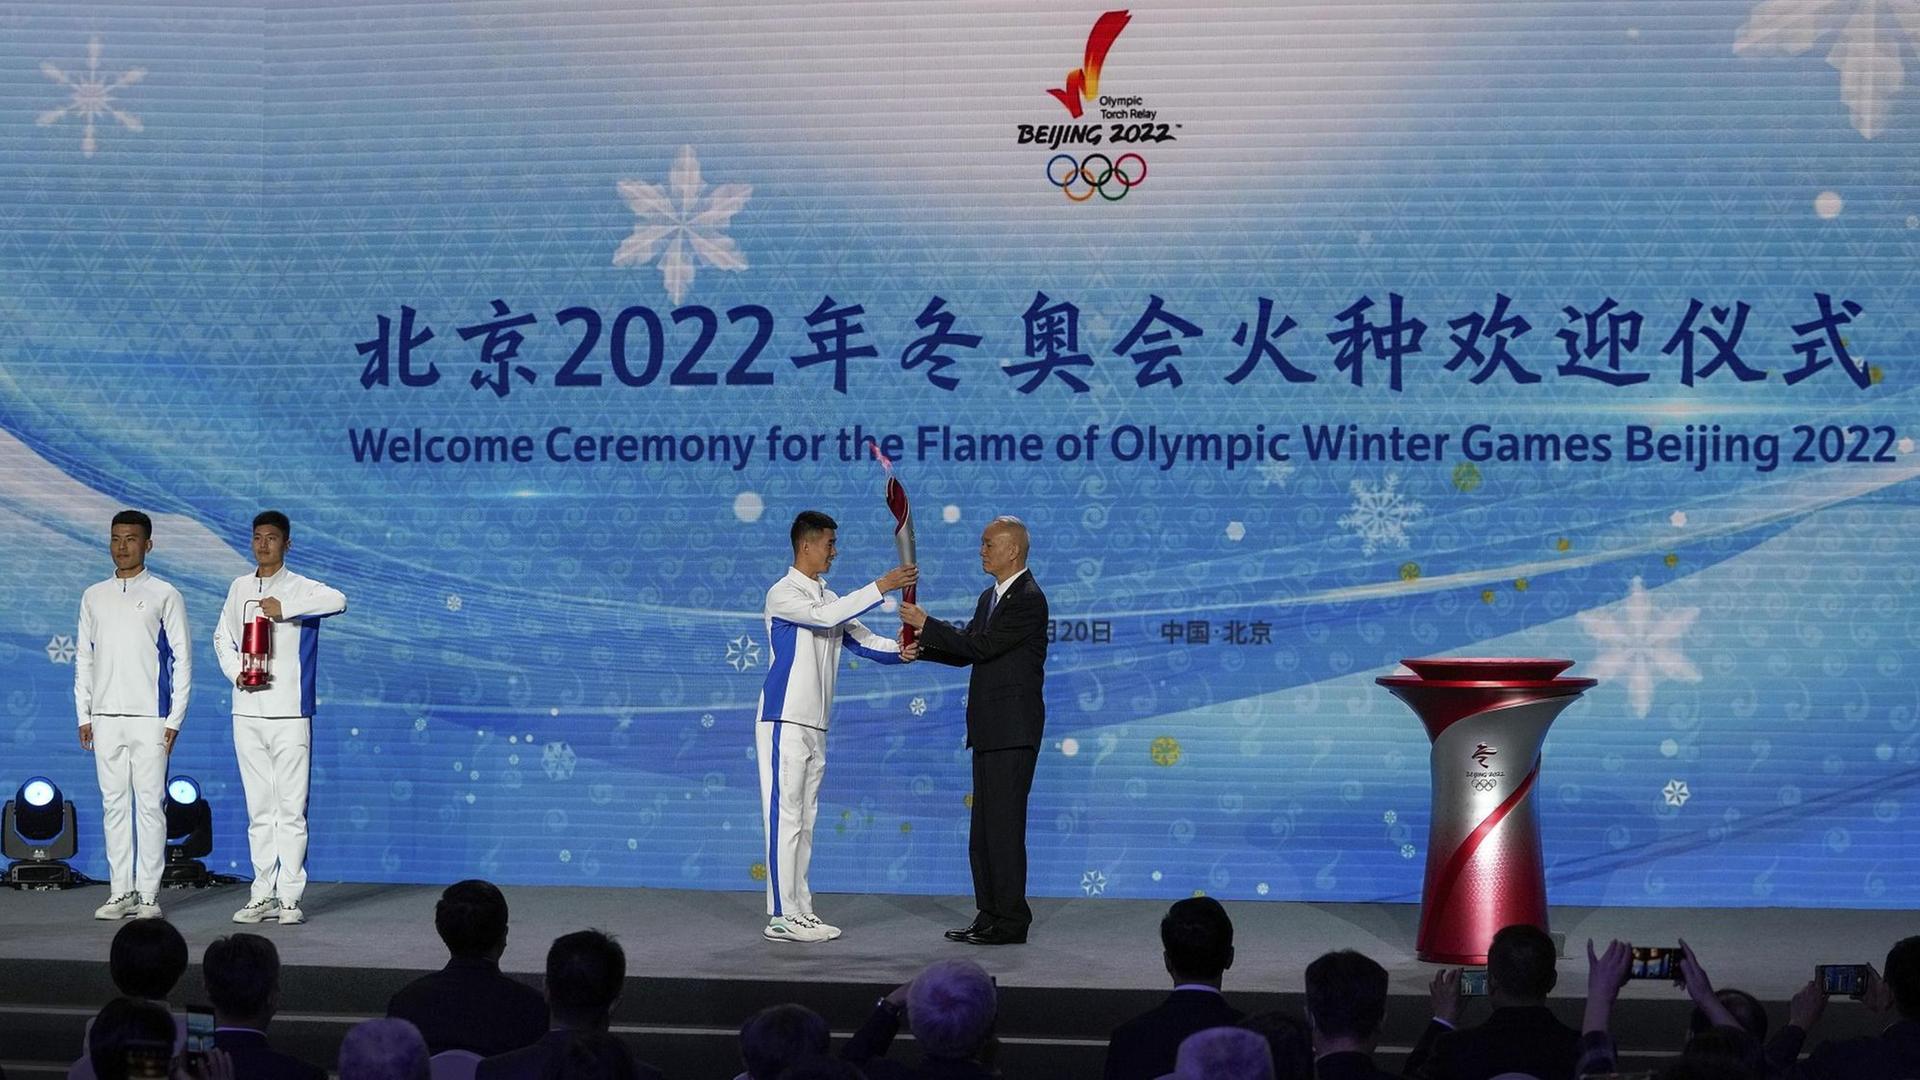 Peking: Ein Sportler übergibt die olympische Fackel an Cai Qi, Sekretär der Kommunistischen Partei Pekings, während der Begrüßungszeremonie zur Ankunft der olympischen Flamme für die Olympischen Winterspiele Peking 2022 im Olympiaturm.